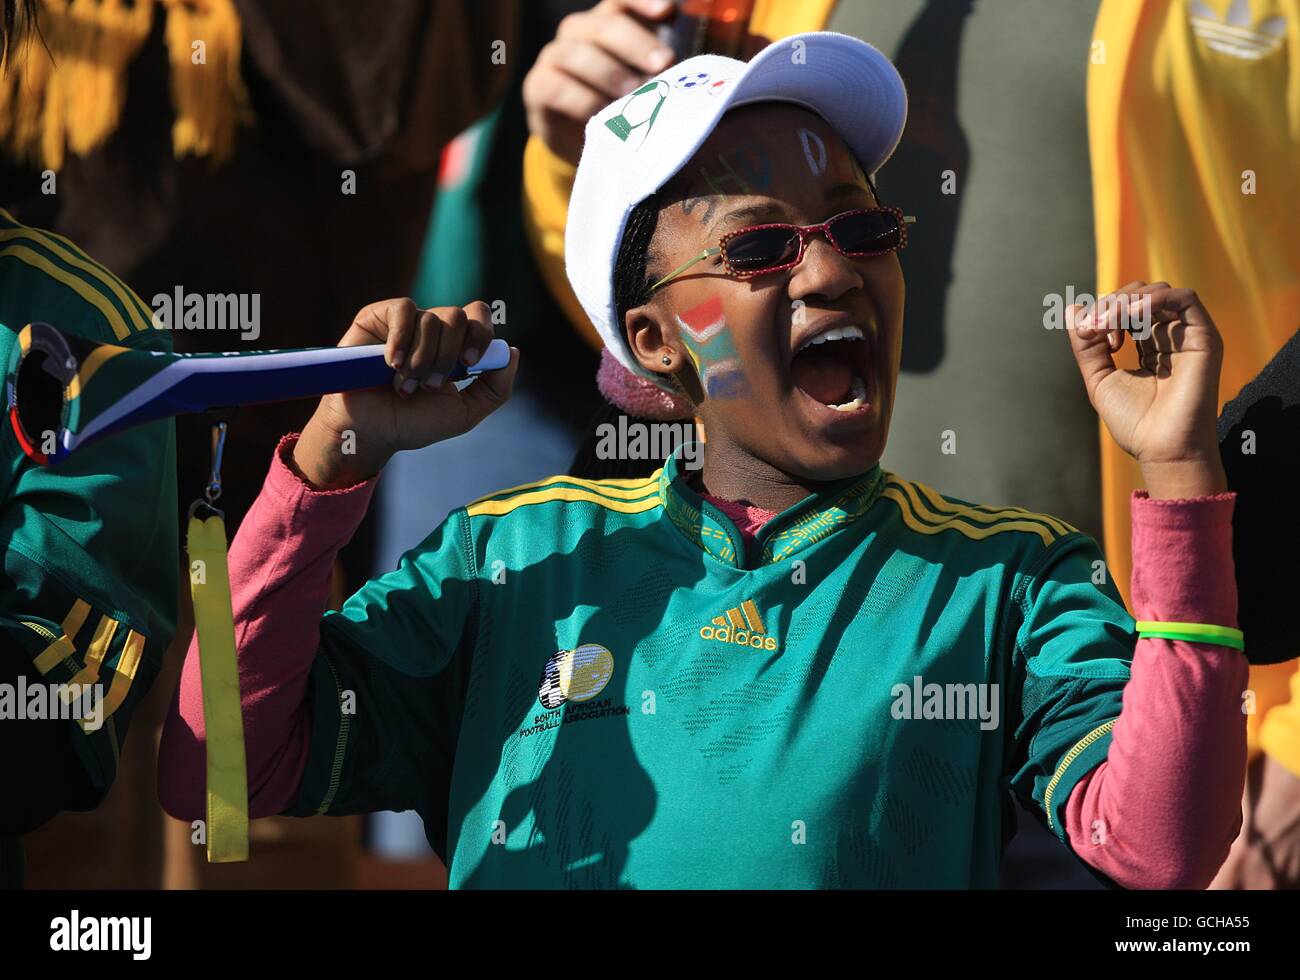 Calcio - Coppa del mondo FIFA Sud Africa 2010 - cerimonia di apertura - Stadio della Città di Calcio. Un fan del Sudafrica ama la cerimonia di apertura Foto Stock